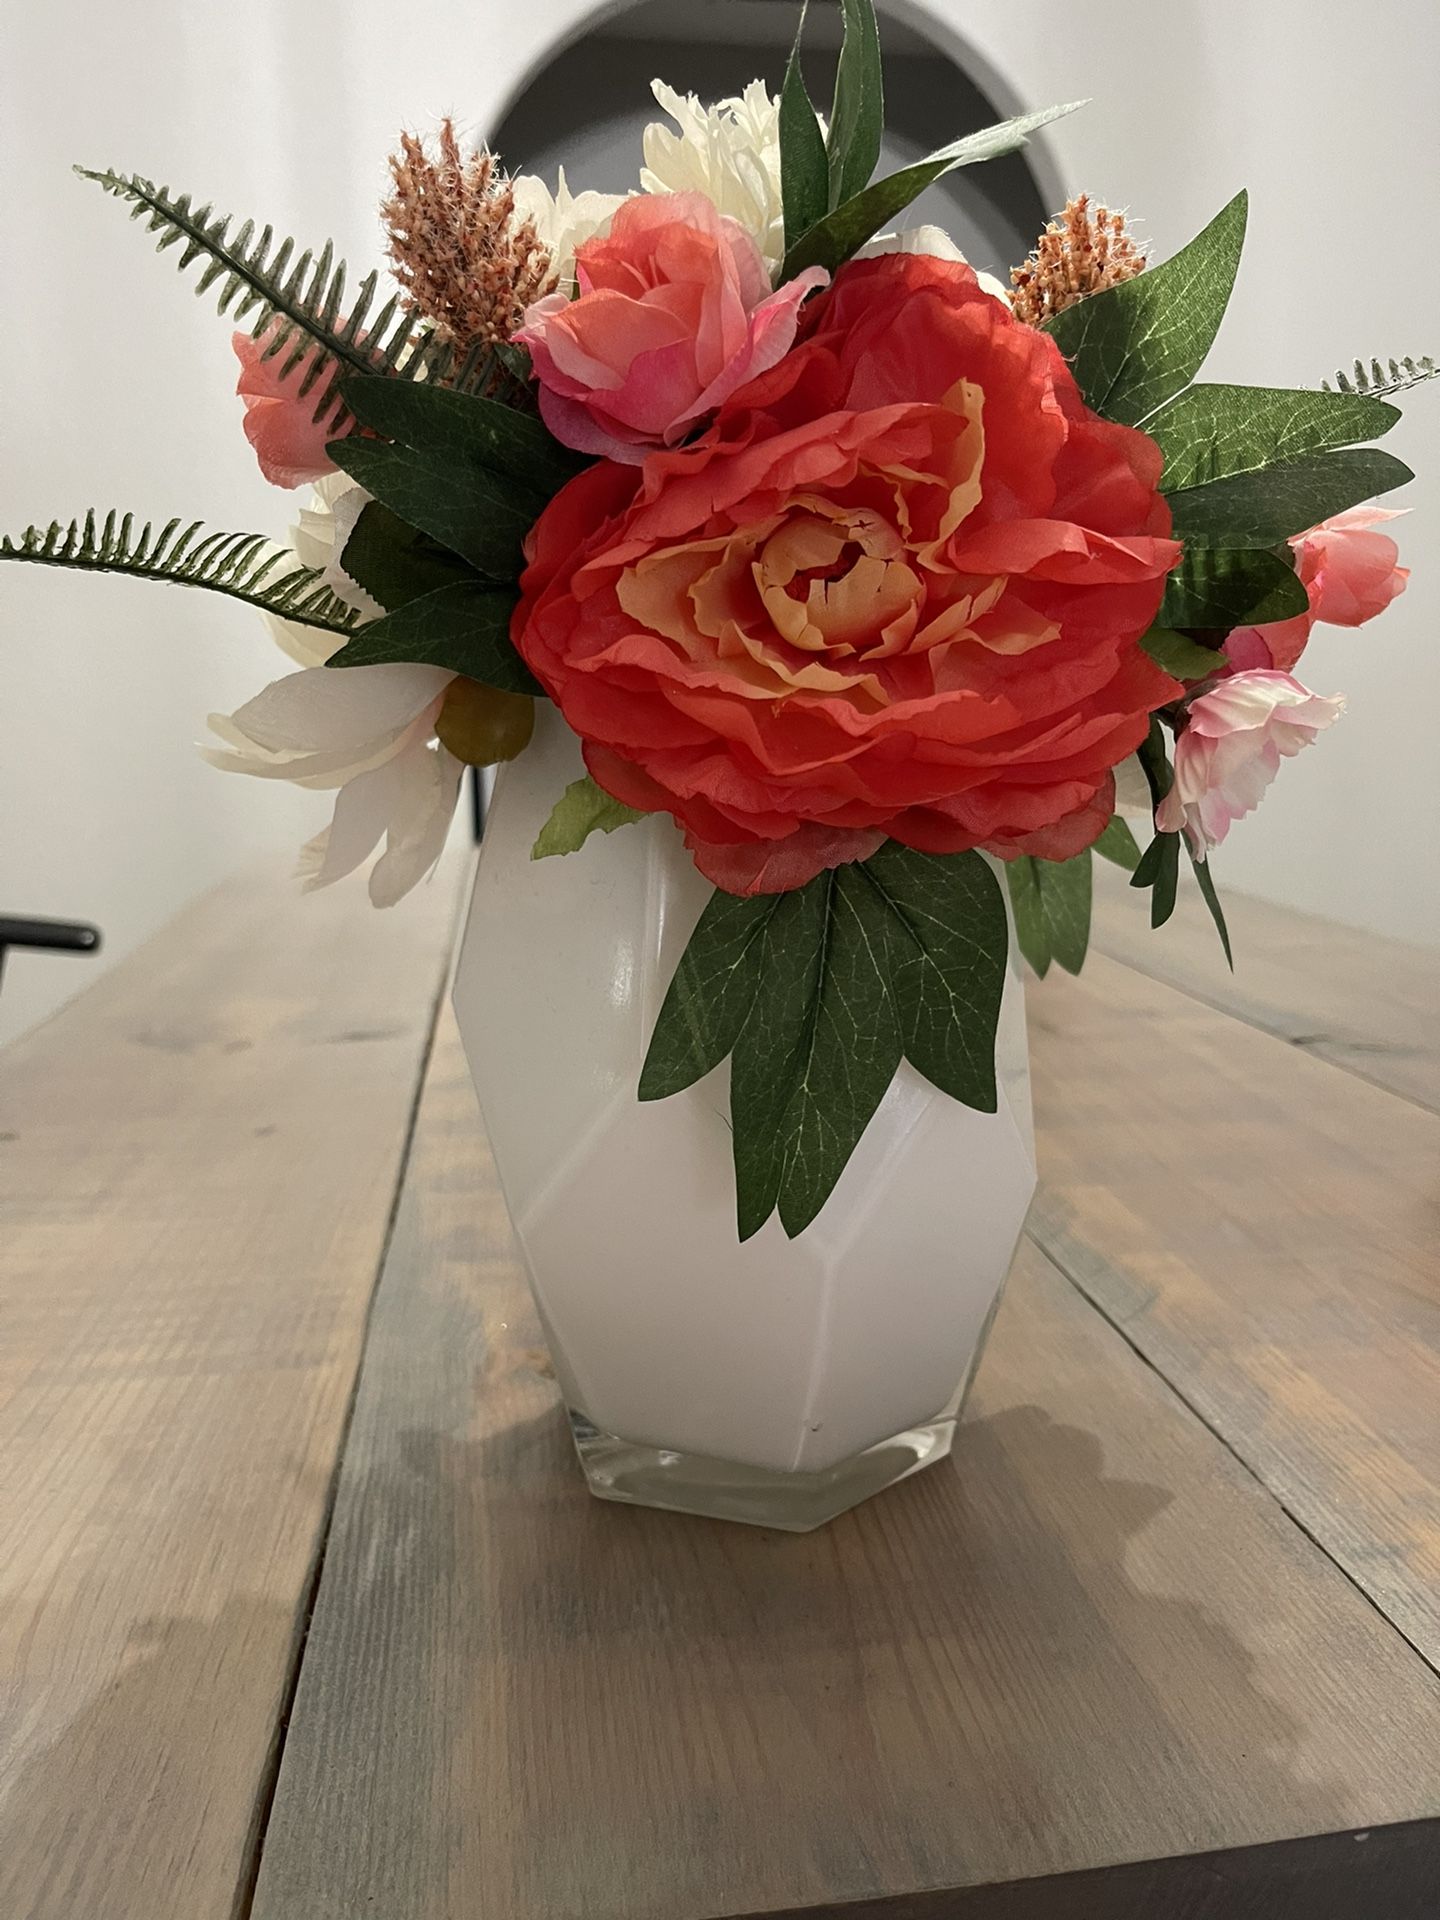 Flower Arrangement With White Vase